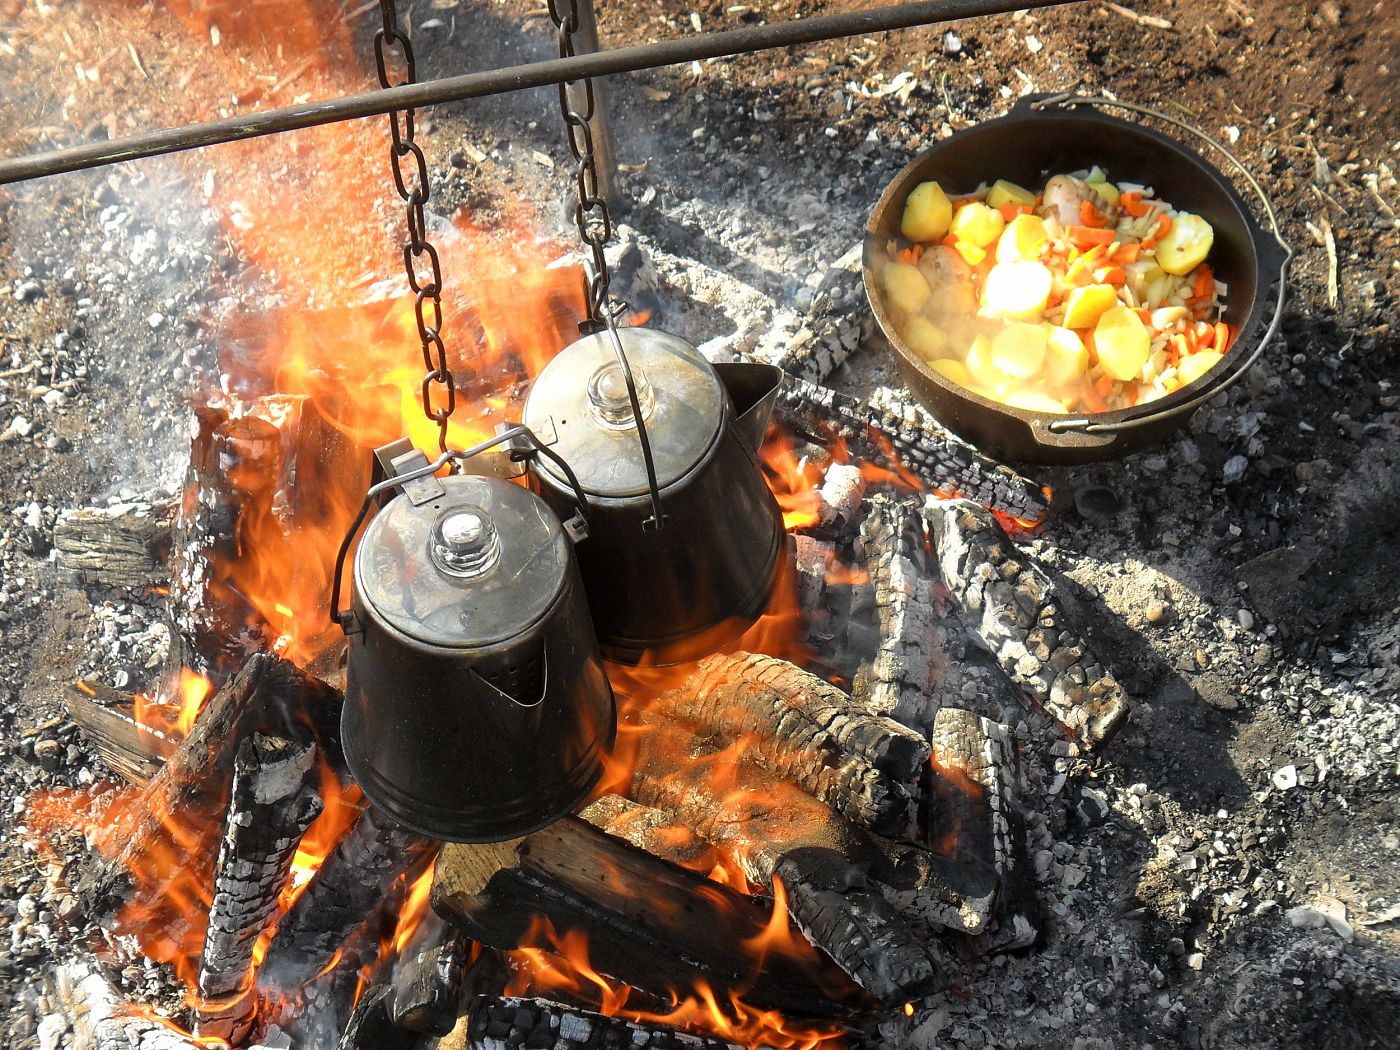 offroad-adventures-outdoor-cooking-02-1599403239.jpg